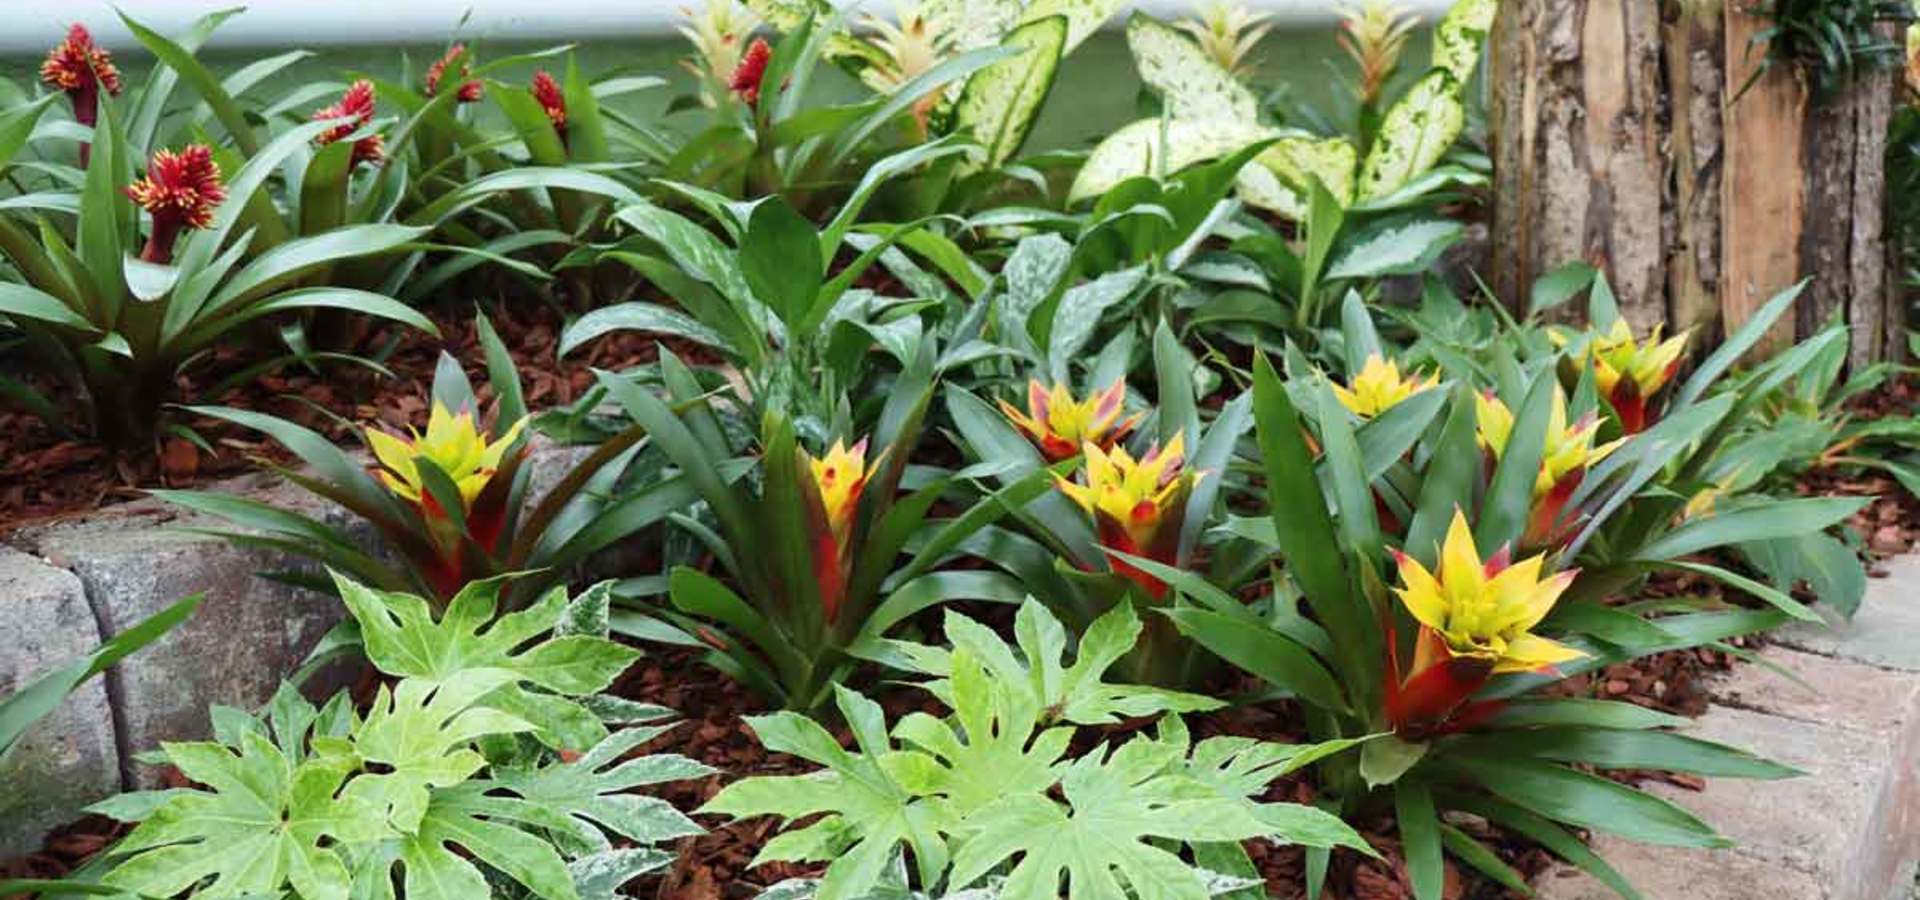 Razstava sobnih rastlin, ananasovk in orhidej